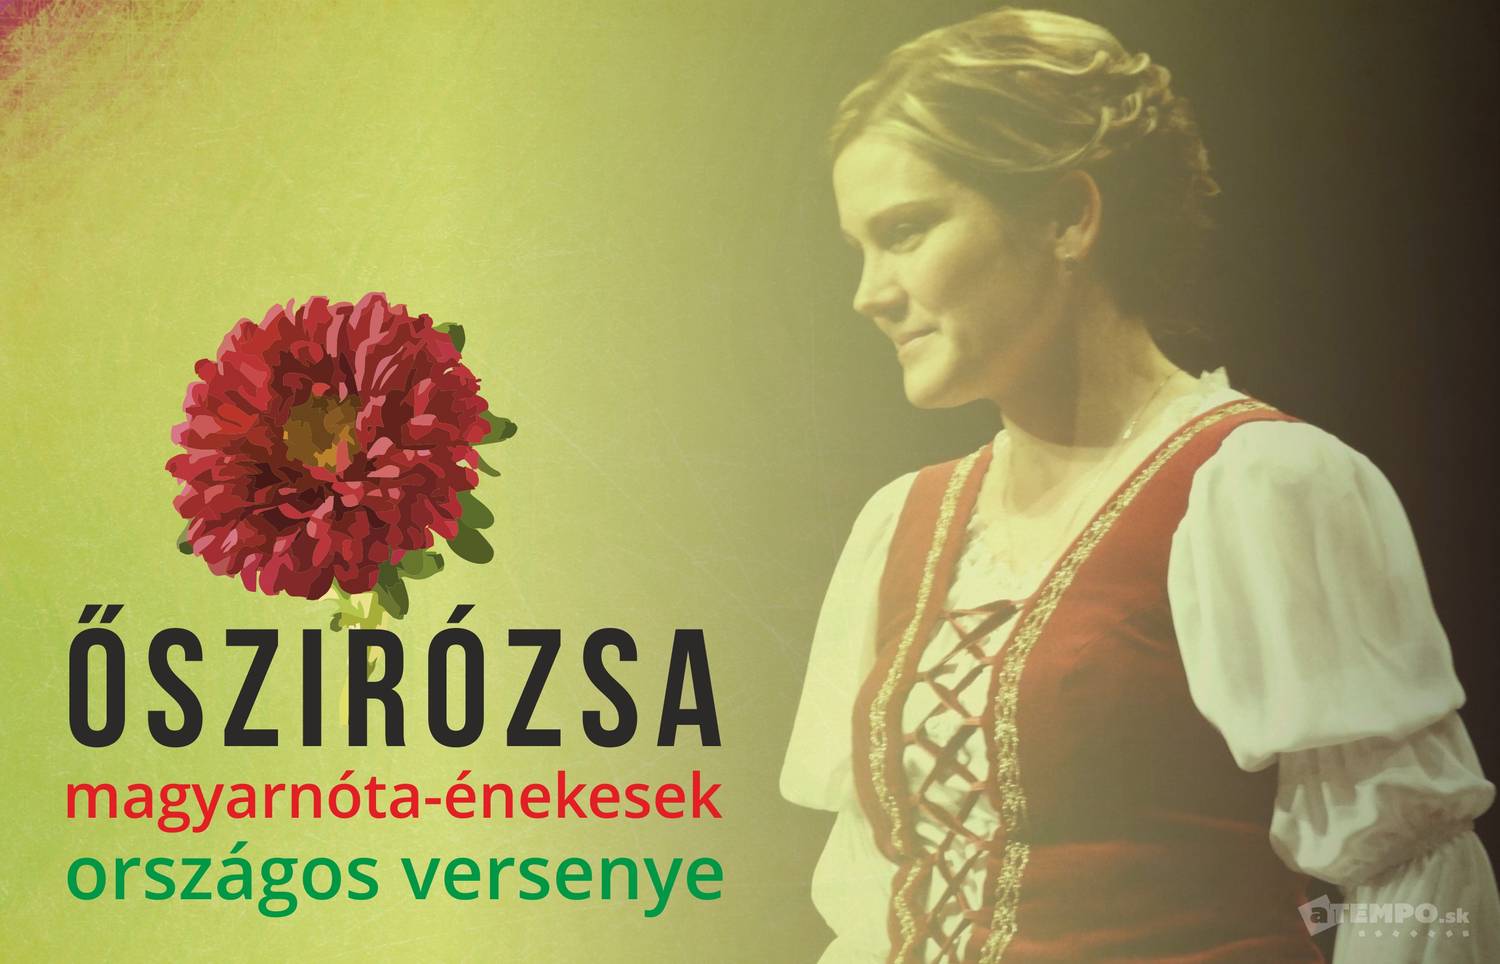 XXIII. Őszirózsa - magyarnóta-énekesek országos versenye